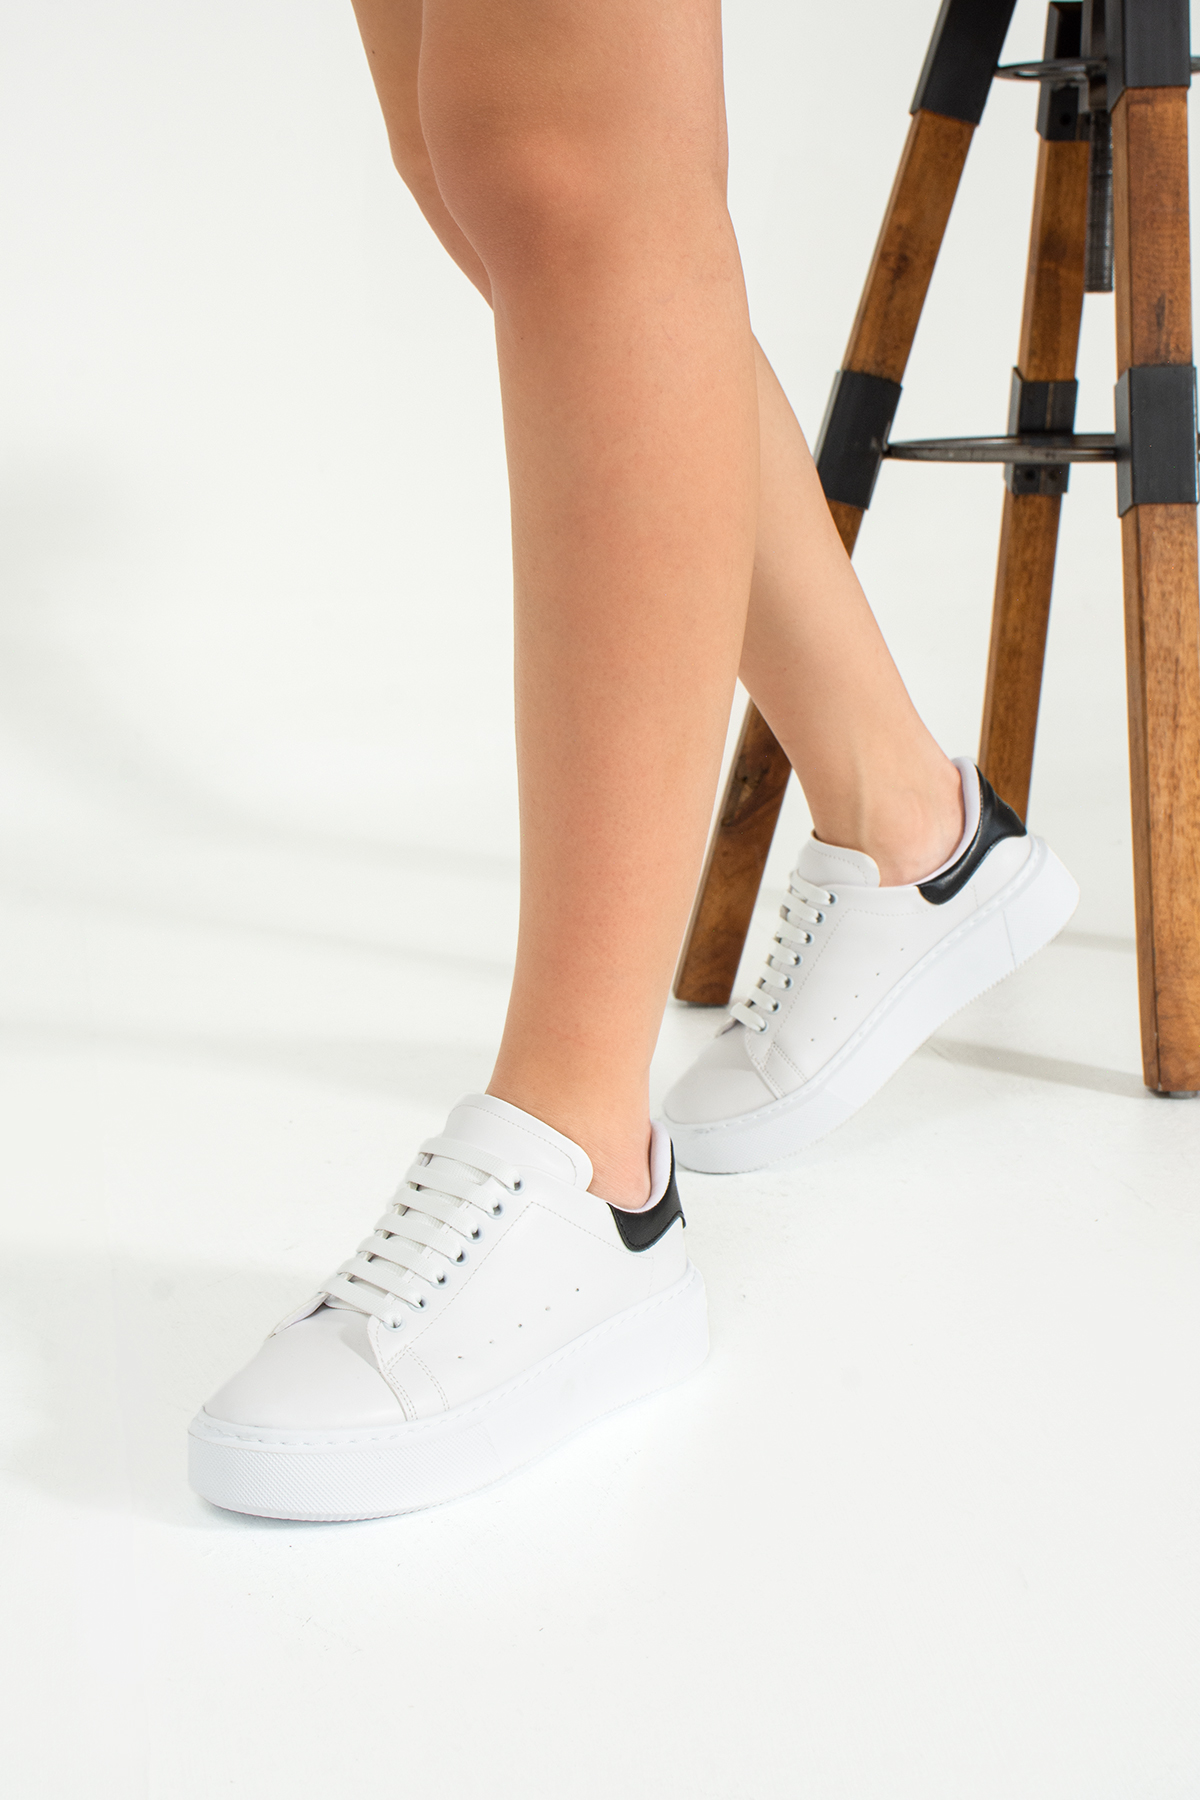 Beyaza Siyah Hafif Dikişli Taban Bağcıklı Günlük Ortapedik İç Taban Kadın Sneaker